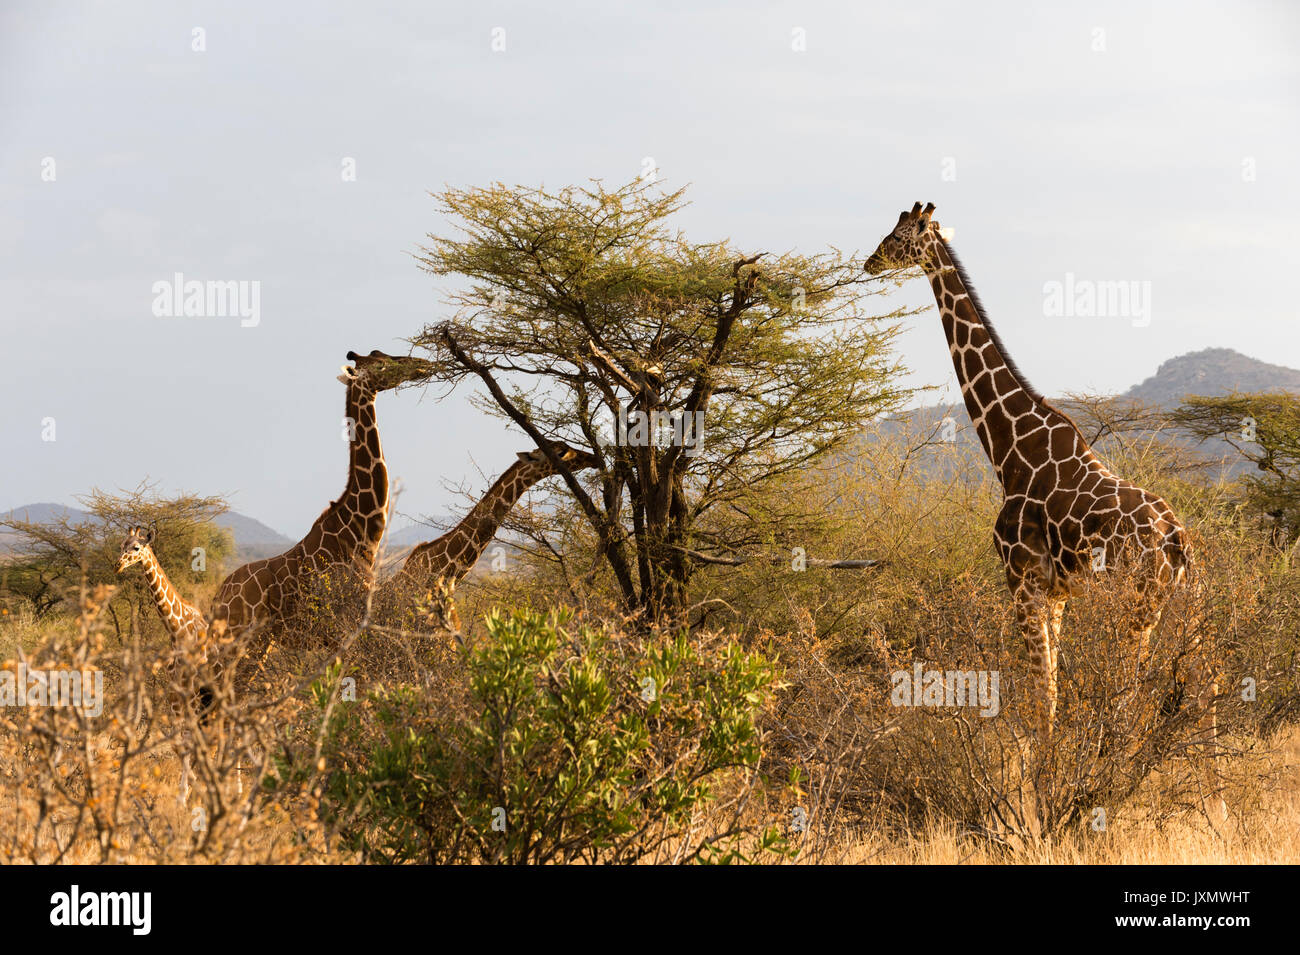 Jirafa reticulada (Giraffa camelopardalis reticulata), Kalama Wildlife Conservancy, Samburu, Kenya, Africa. Foto de stock